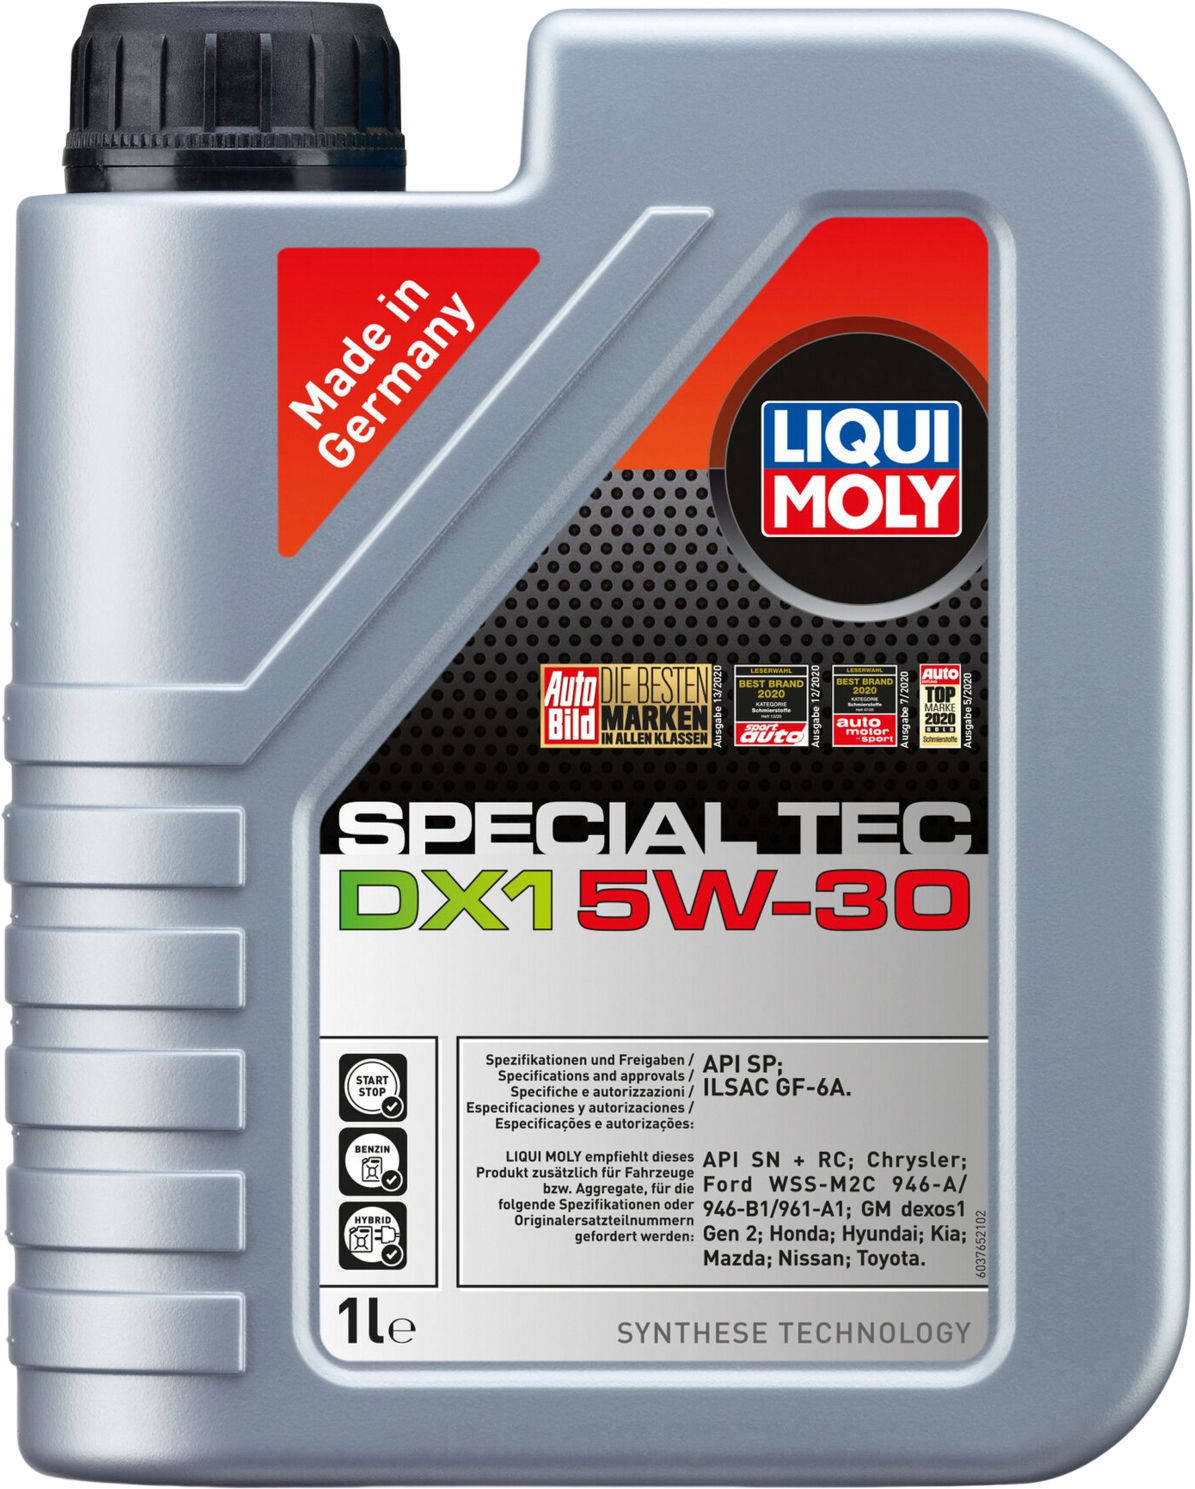 Liqui Moly Special Tec DX1 5W-30, 1 lt